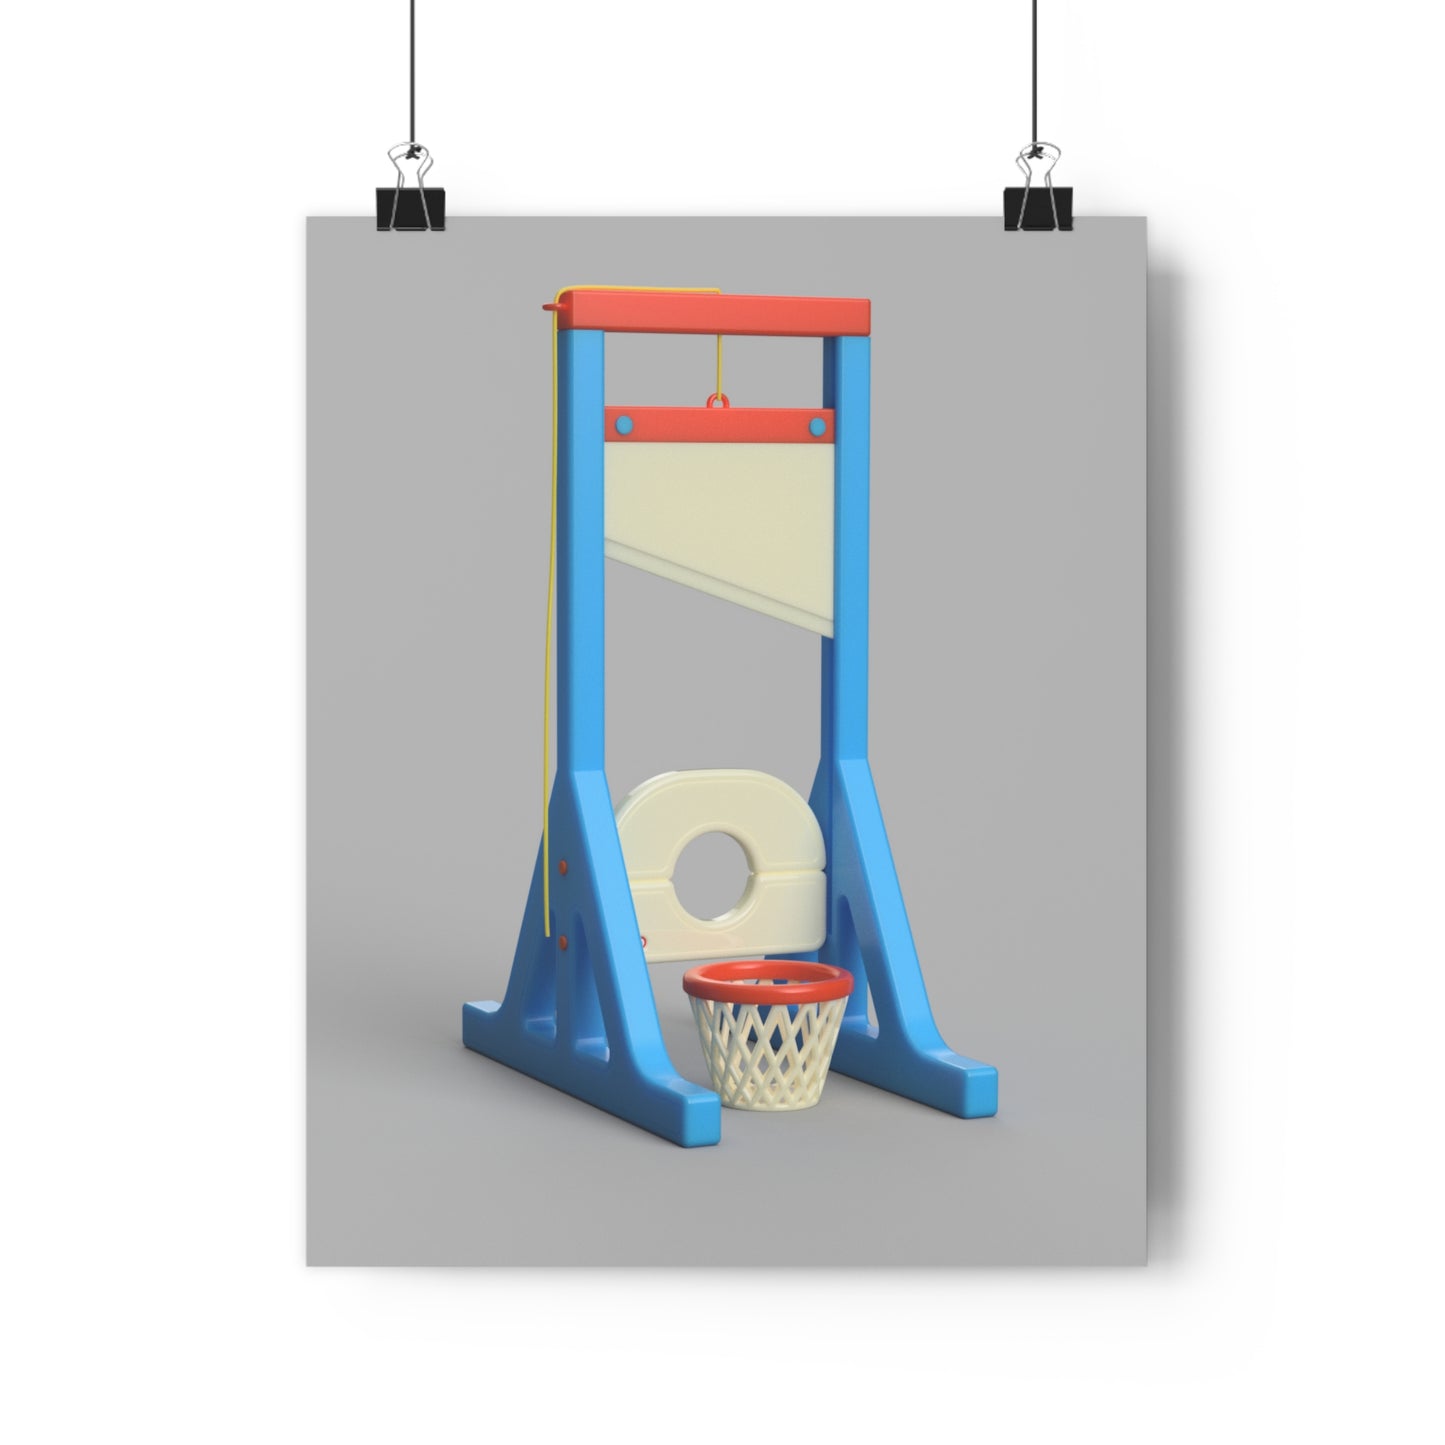 Impresión de archivo de guillotina